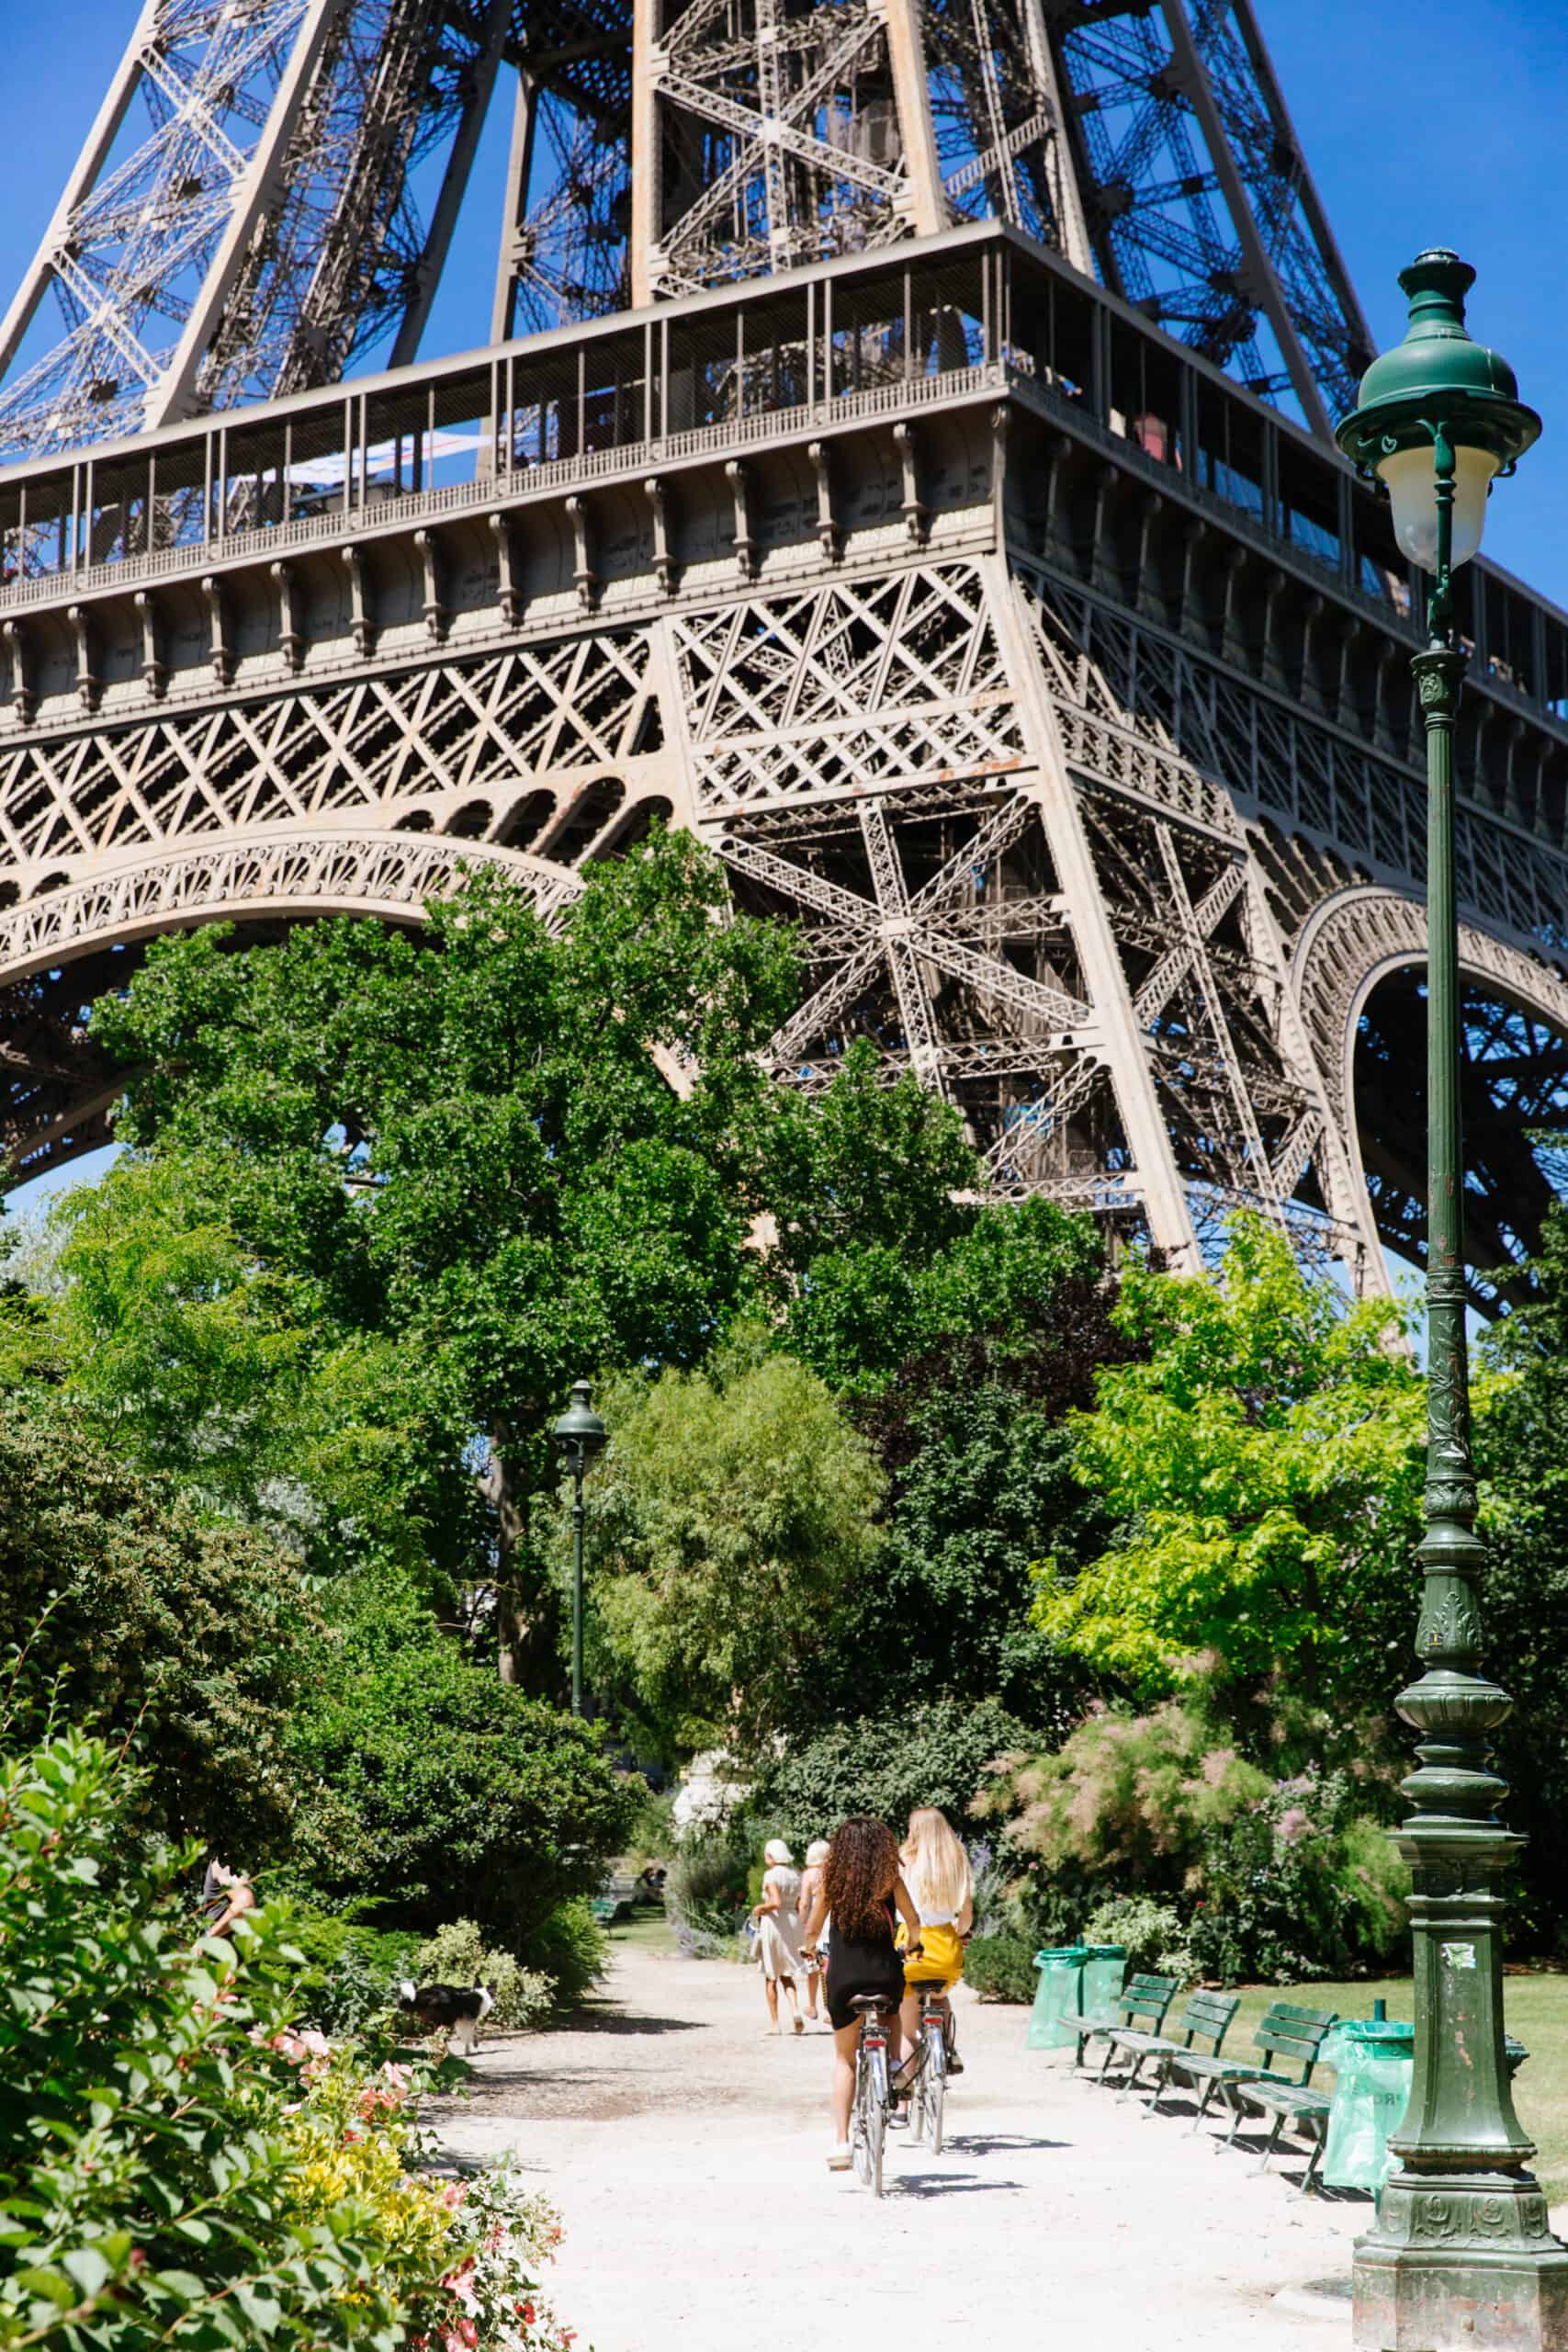 Biking by the Eiffel Tower.